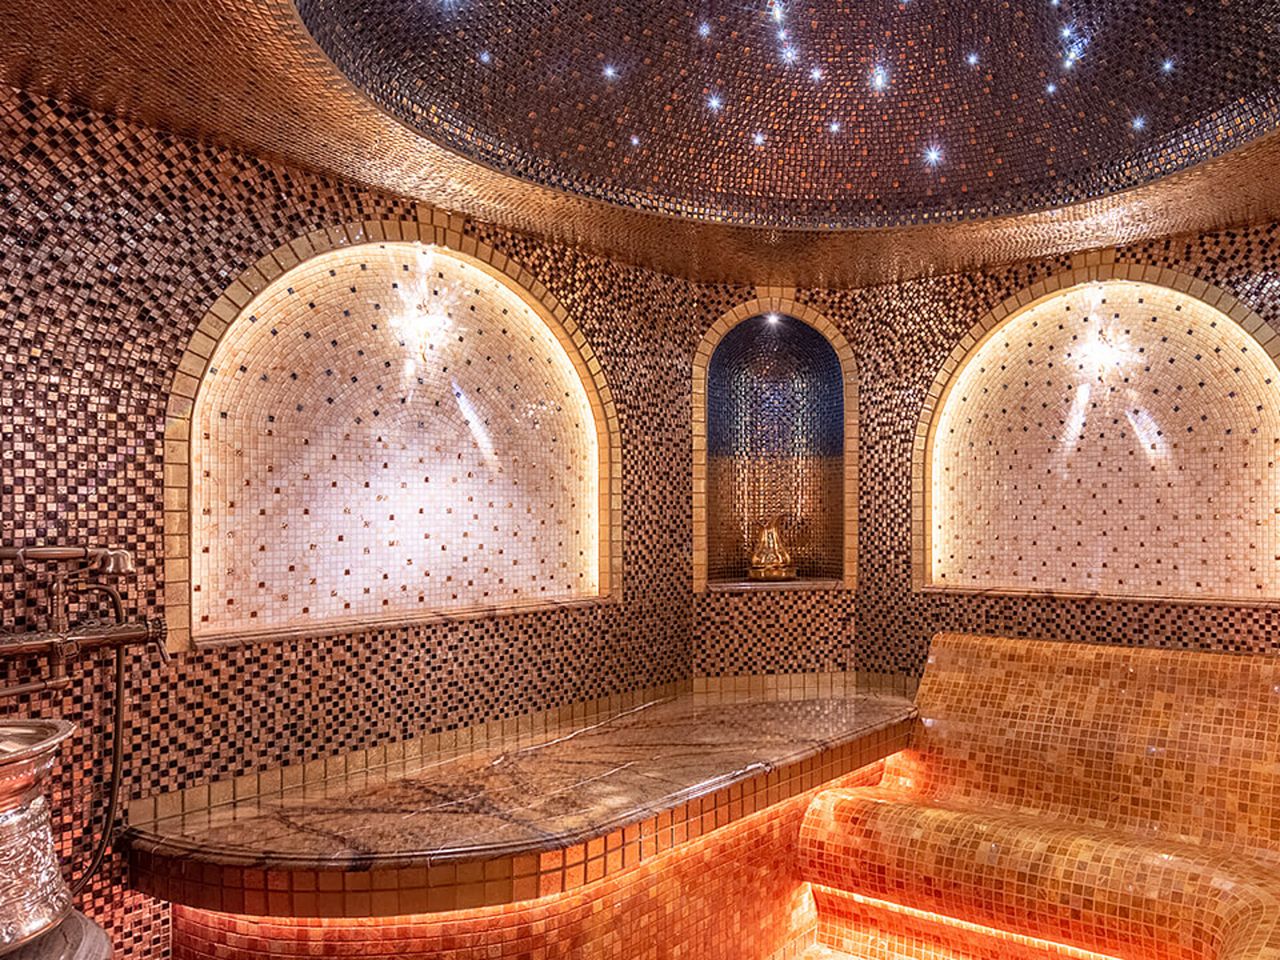 Марокканская баня — традиционный вид парной | Цена 170$, отзывы, описание экскурсии